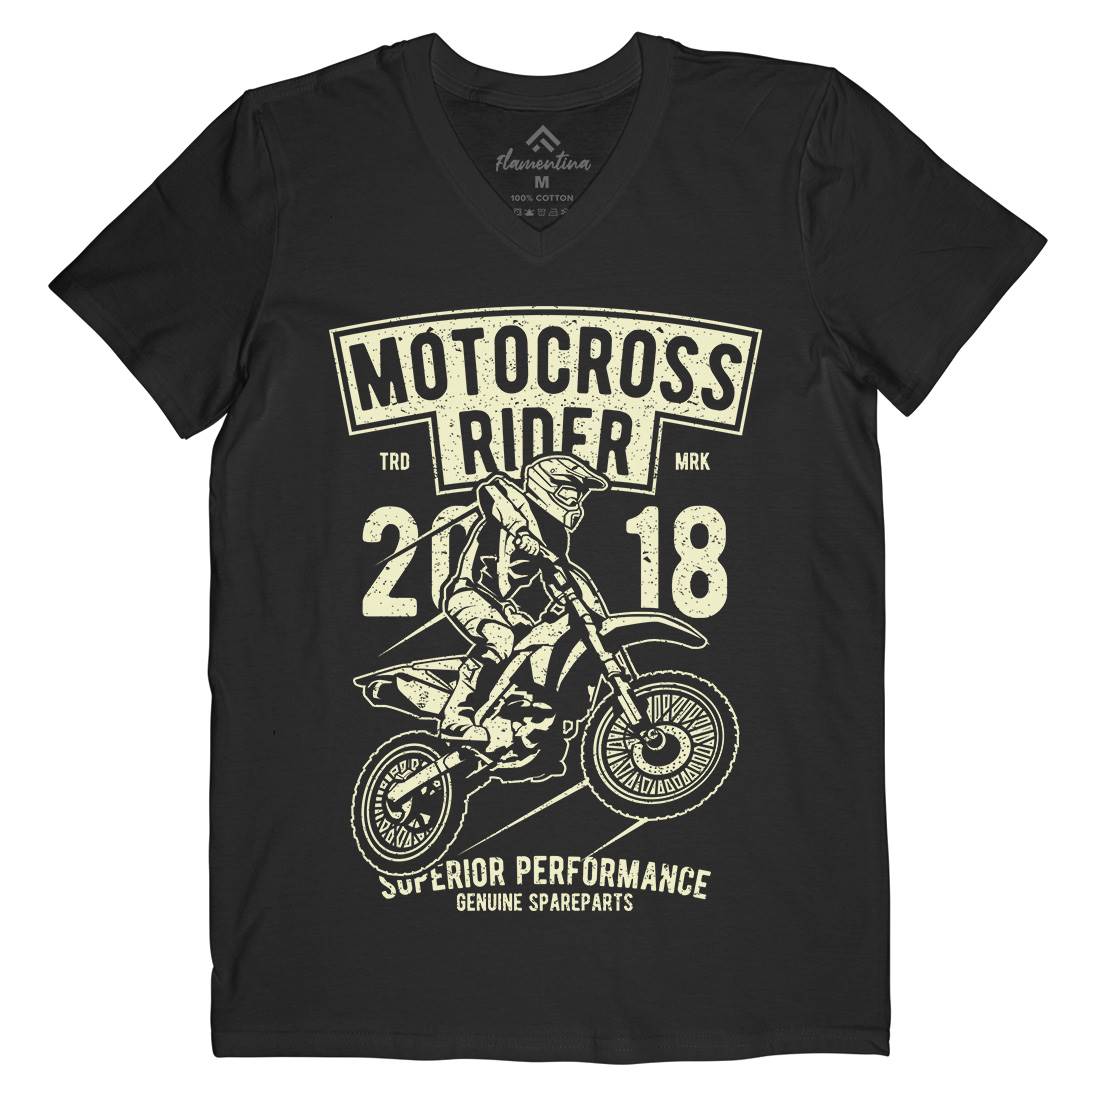 Motocross Rider Mens Organic V-Neck T-Shirt Motorcycles A718